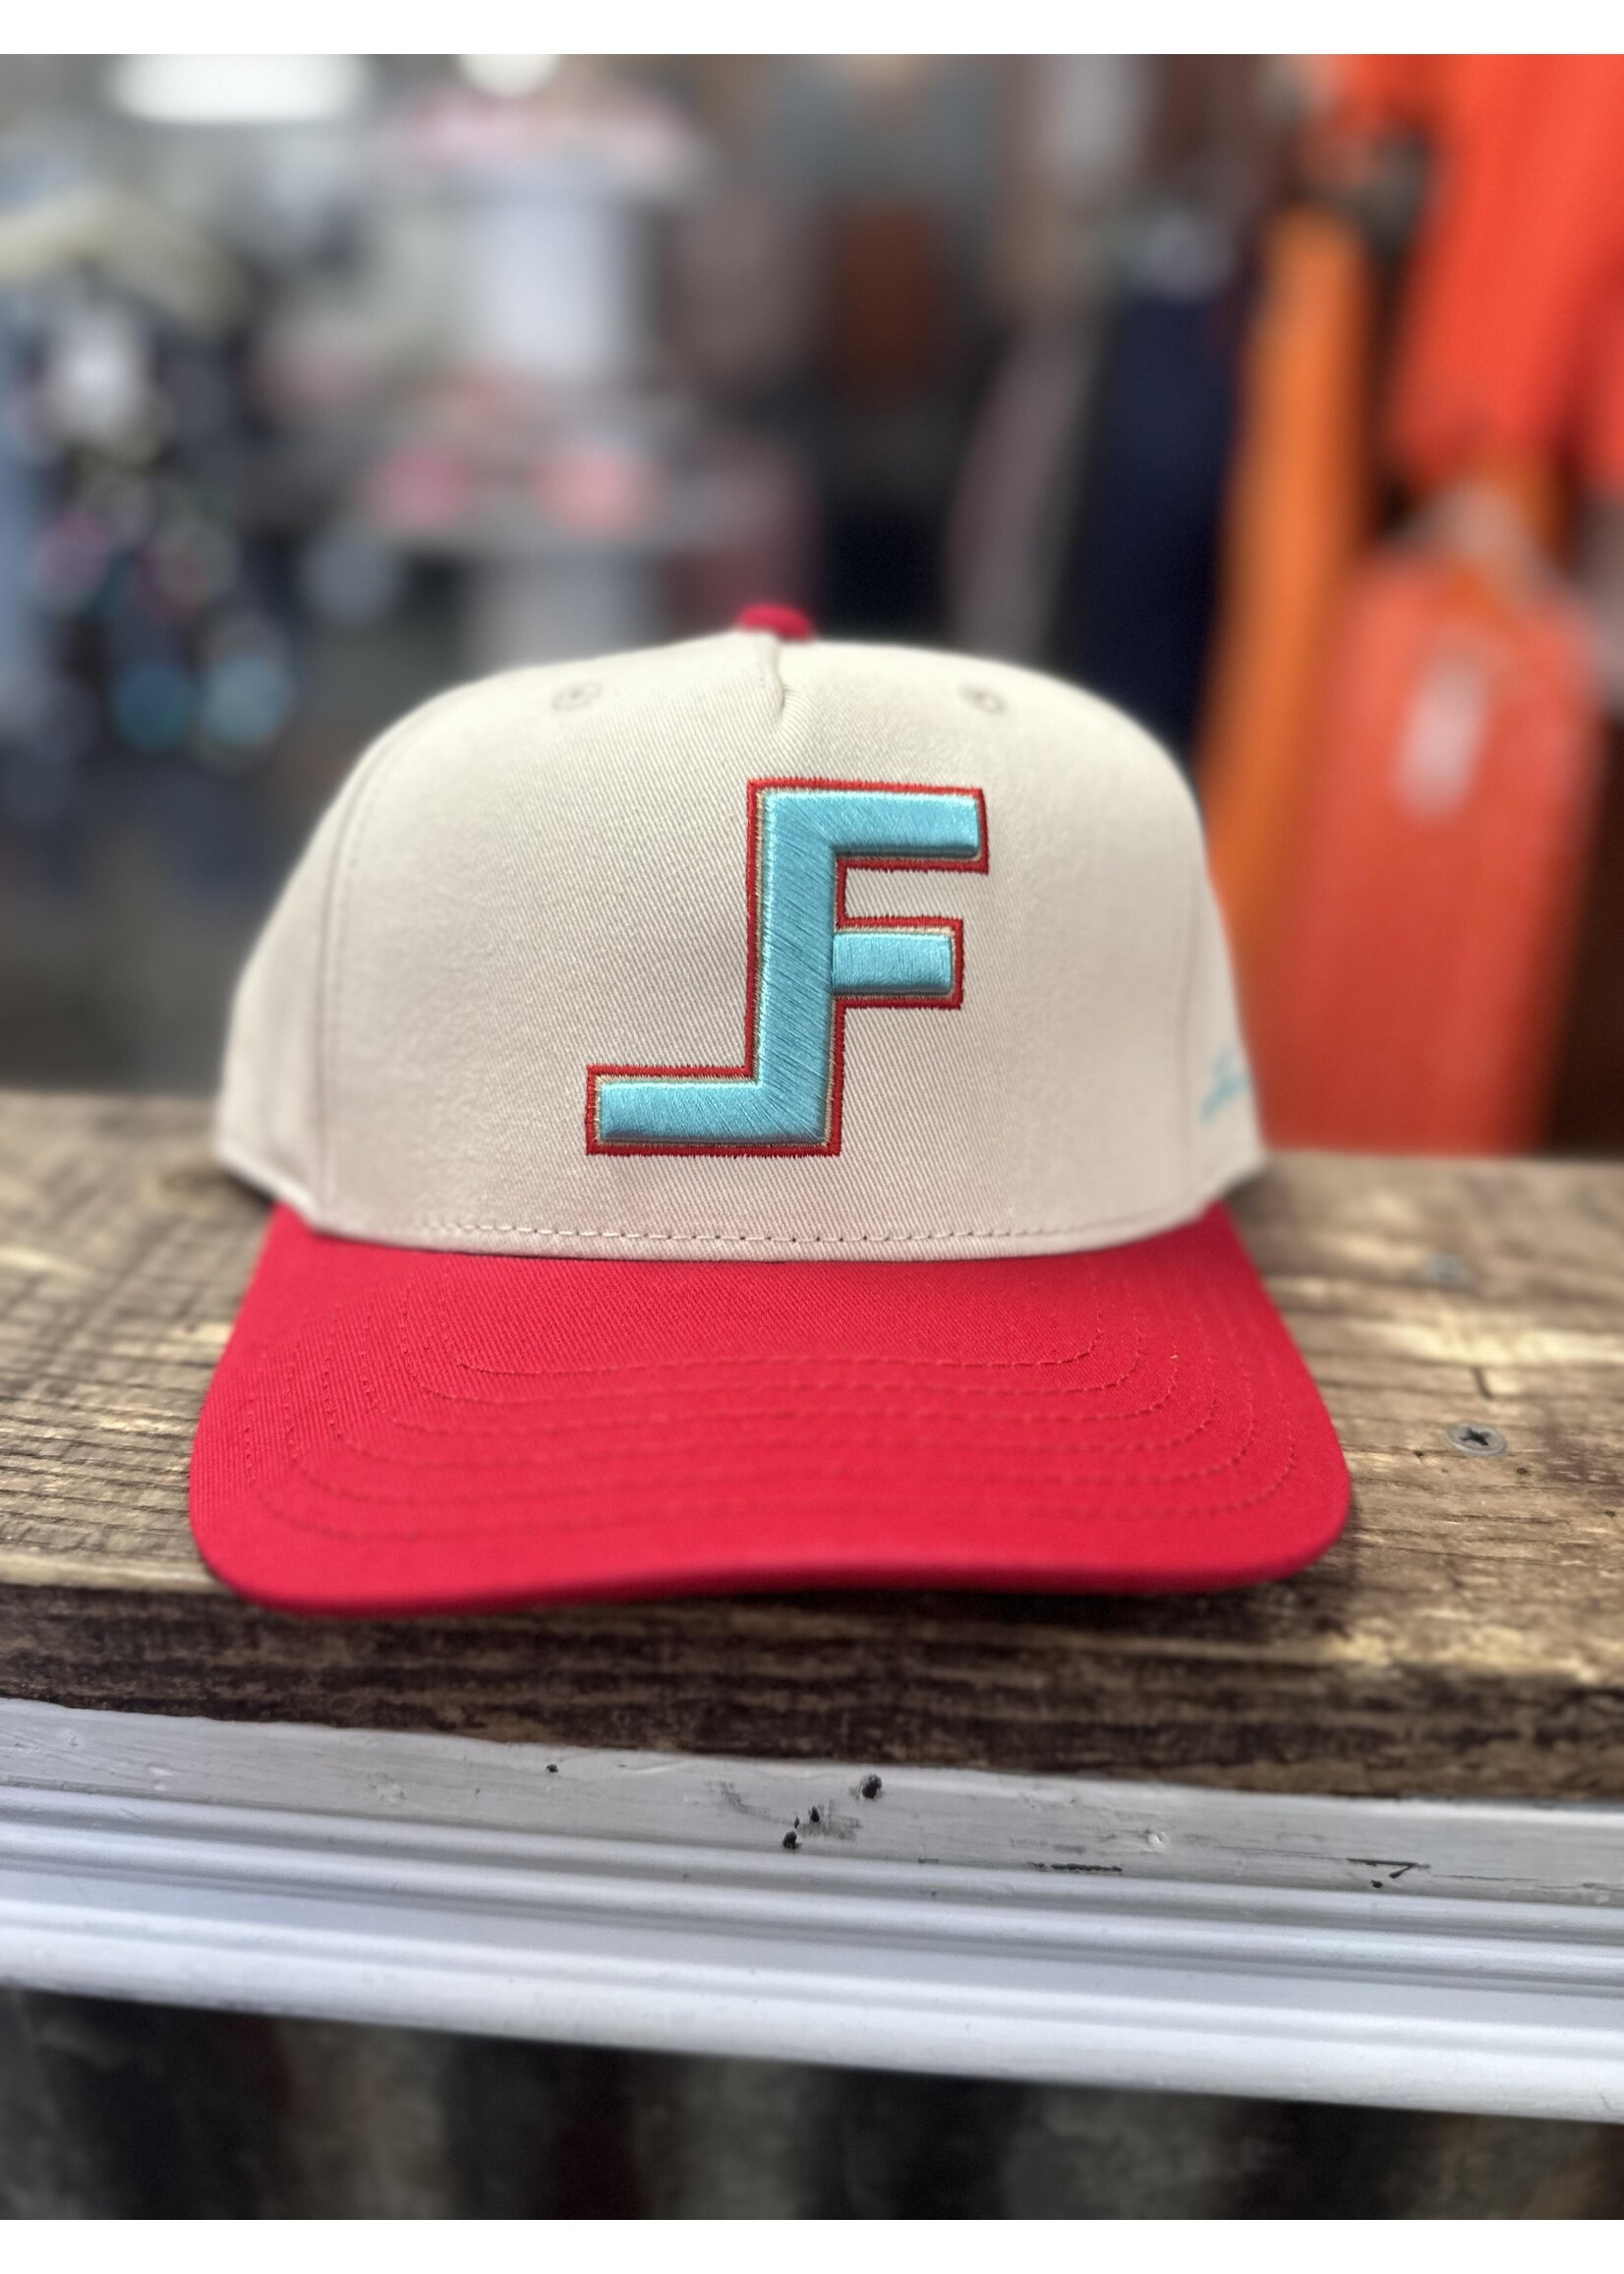 Lane Frost Lane Frost Hats 4